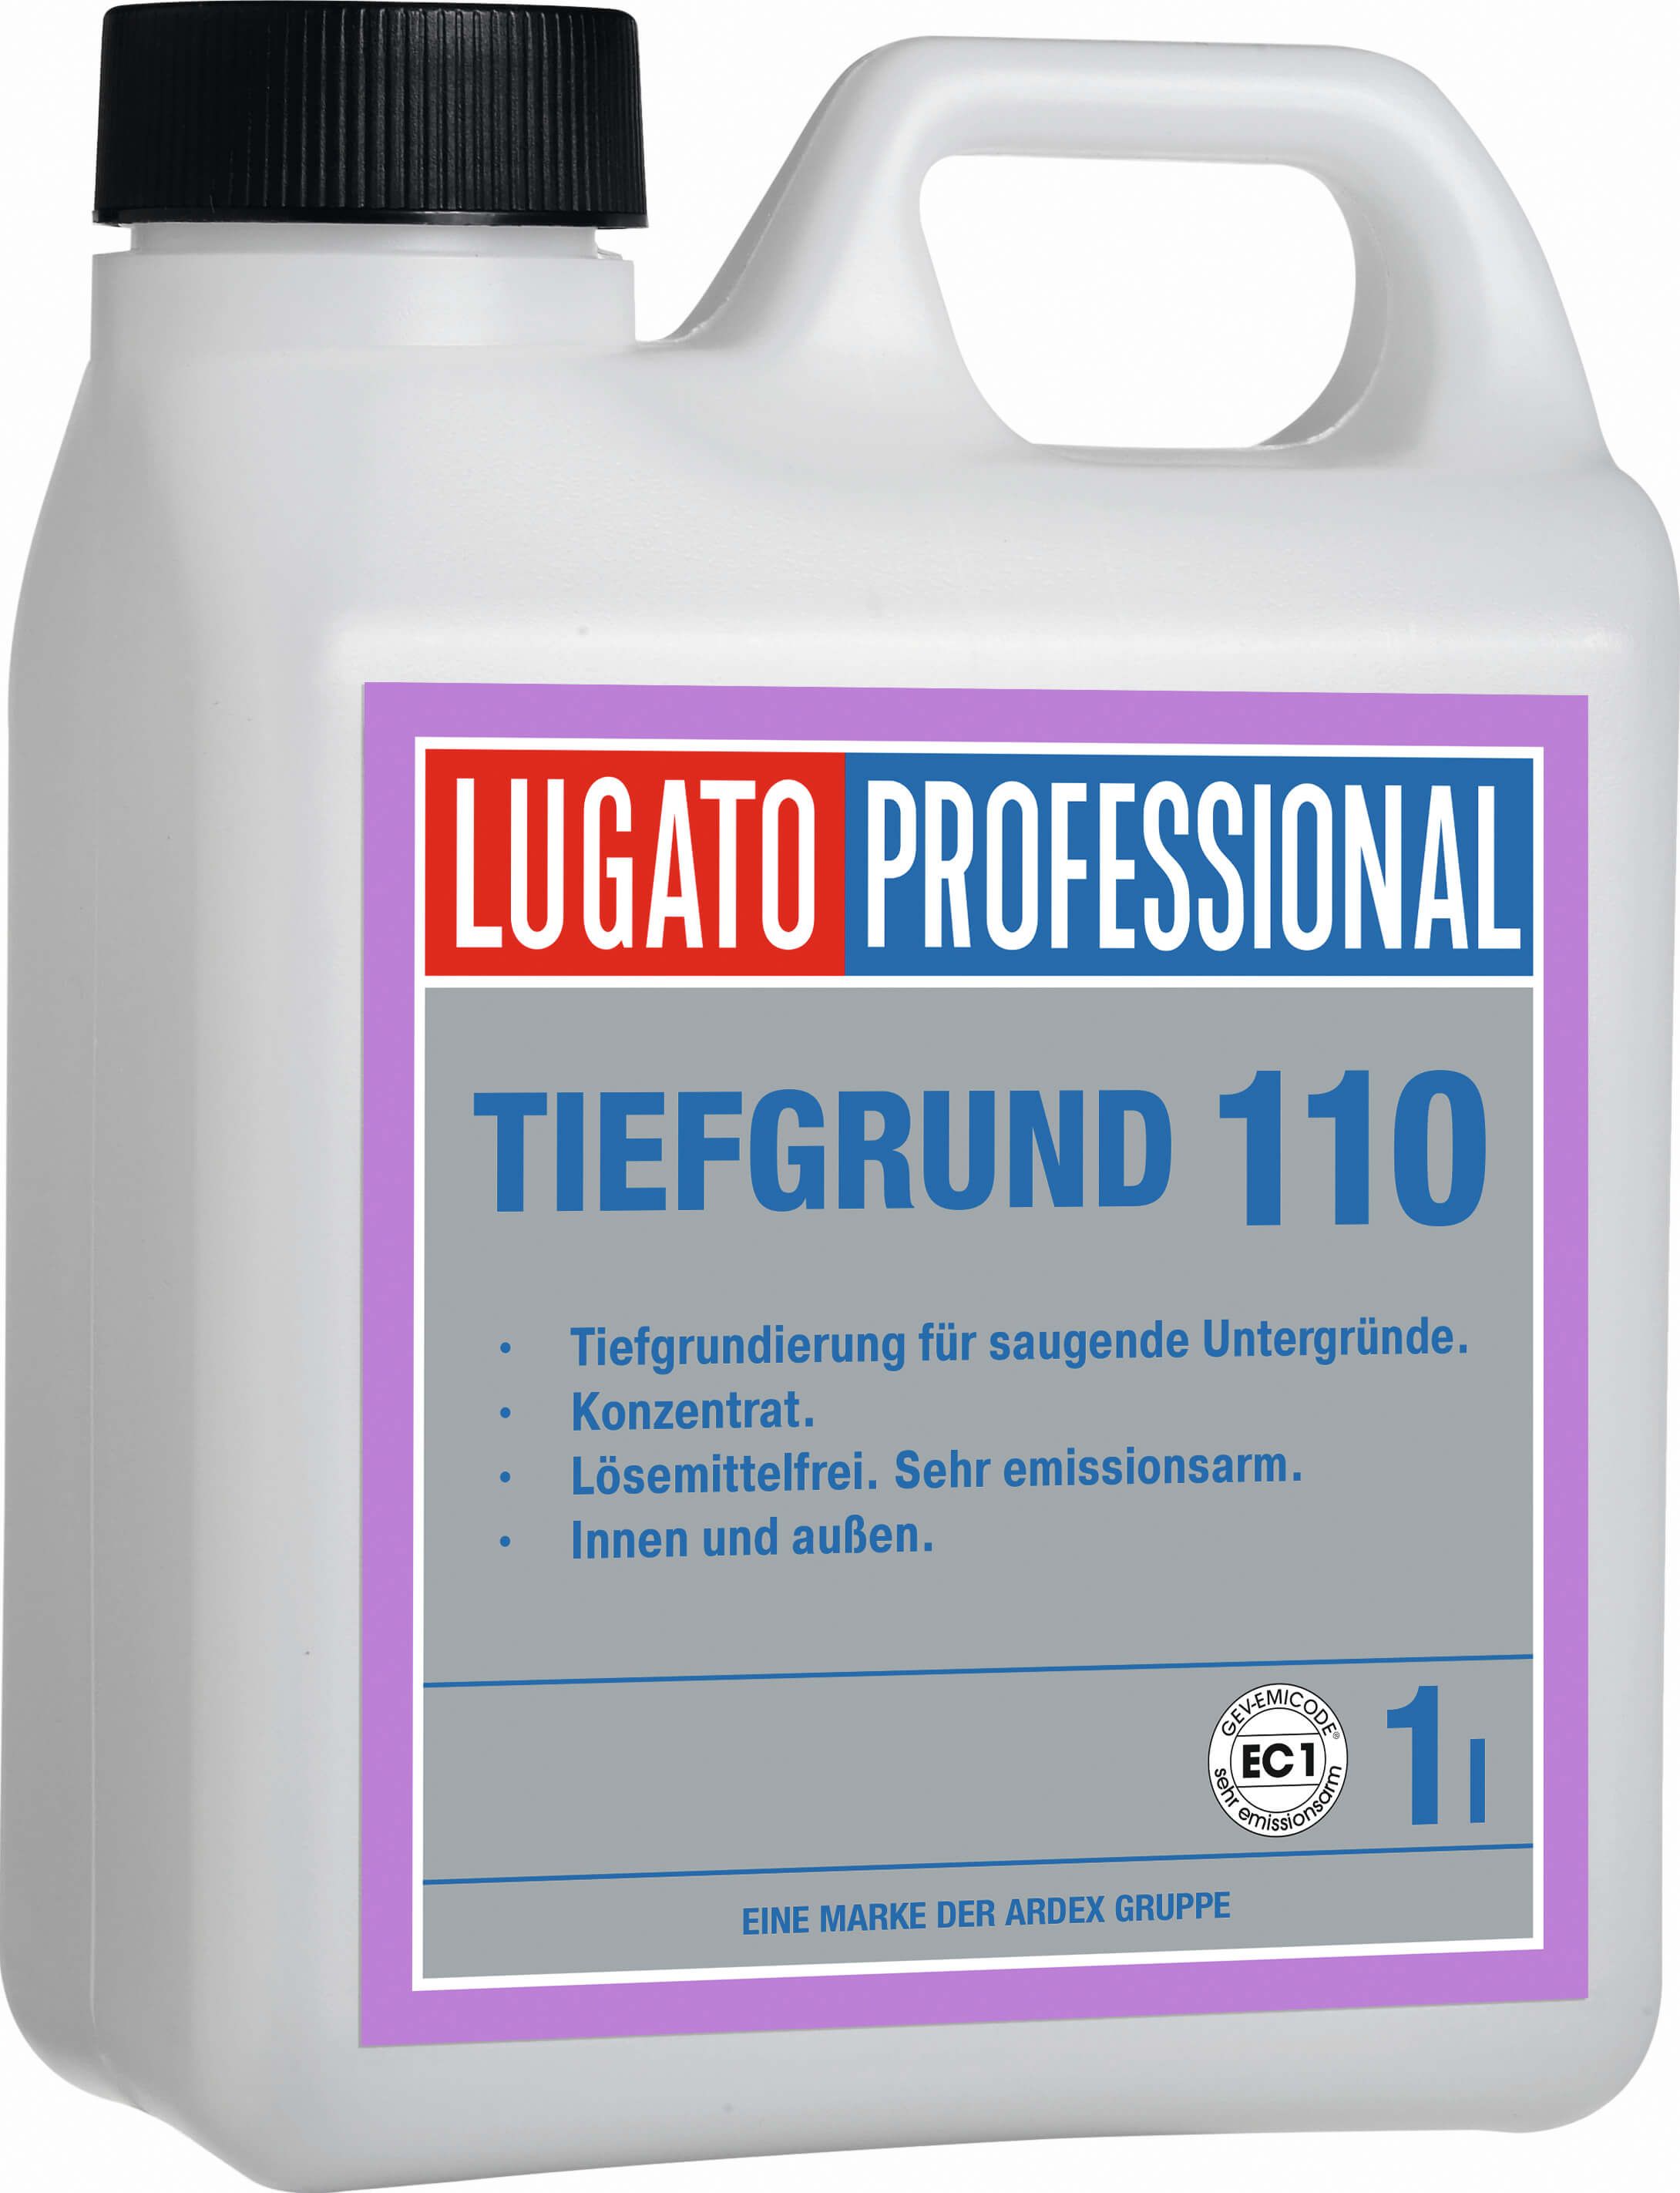 Lugato Tiefgrund 110 1 Liter